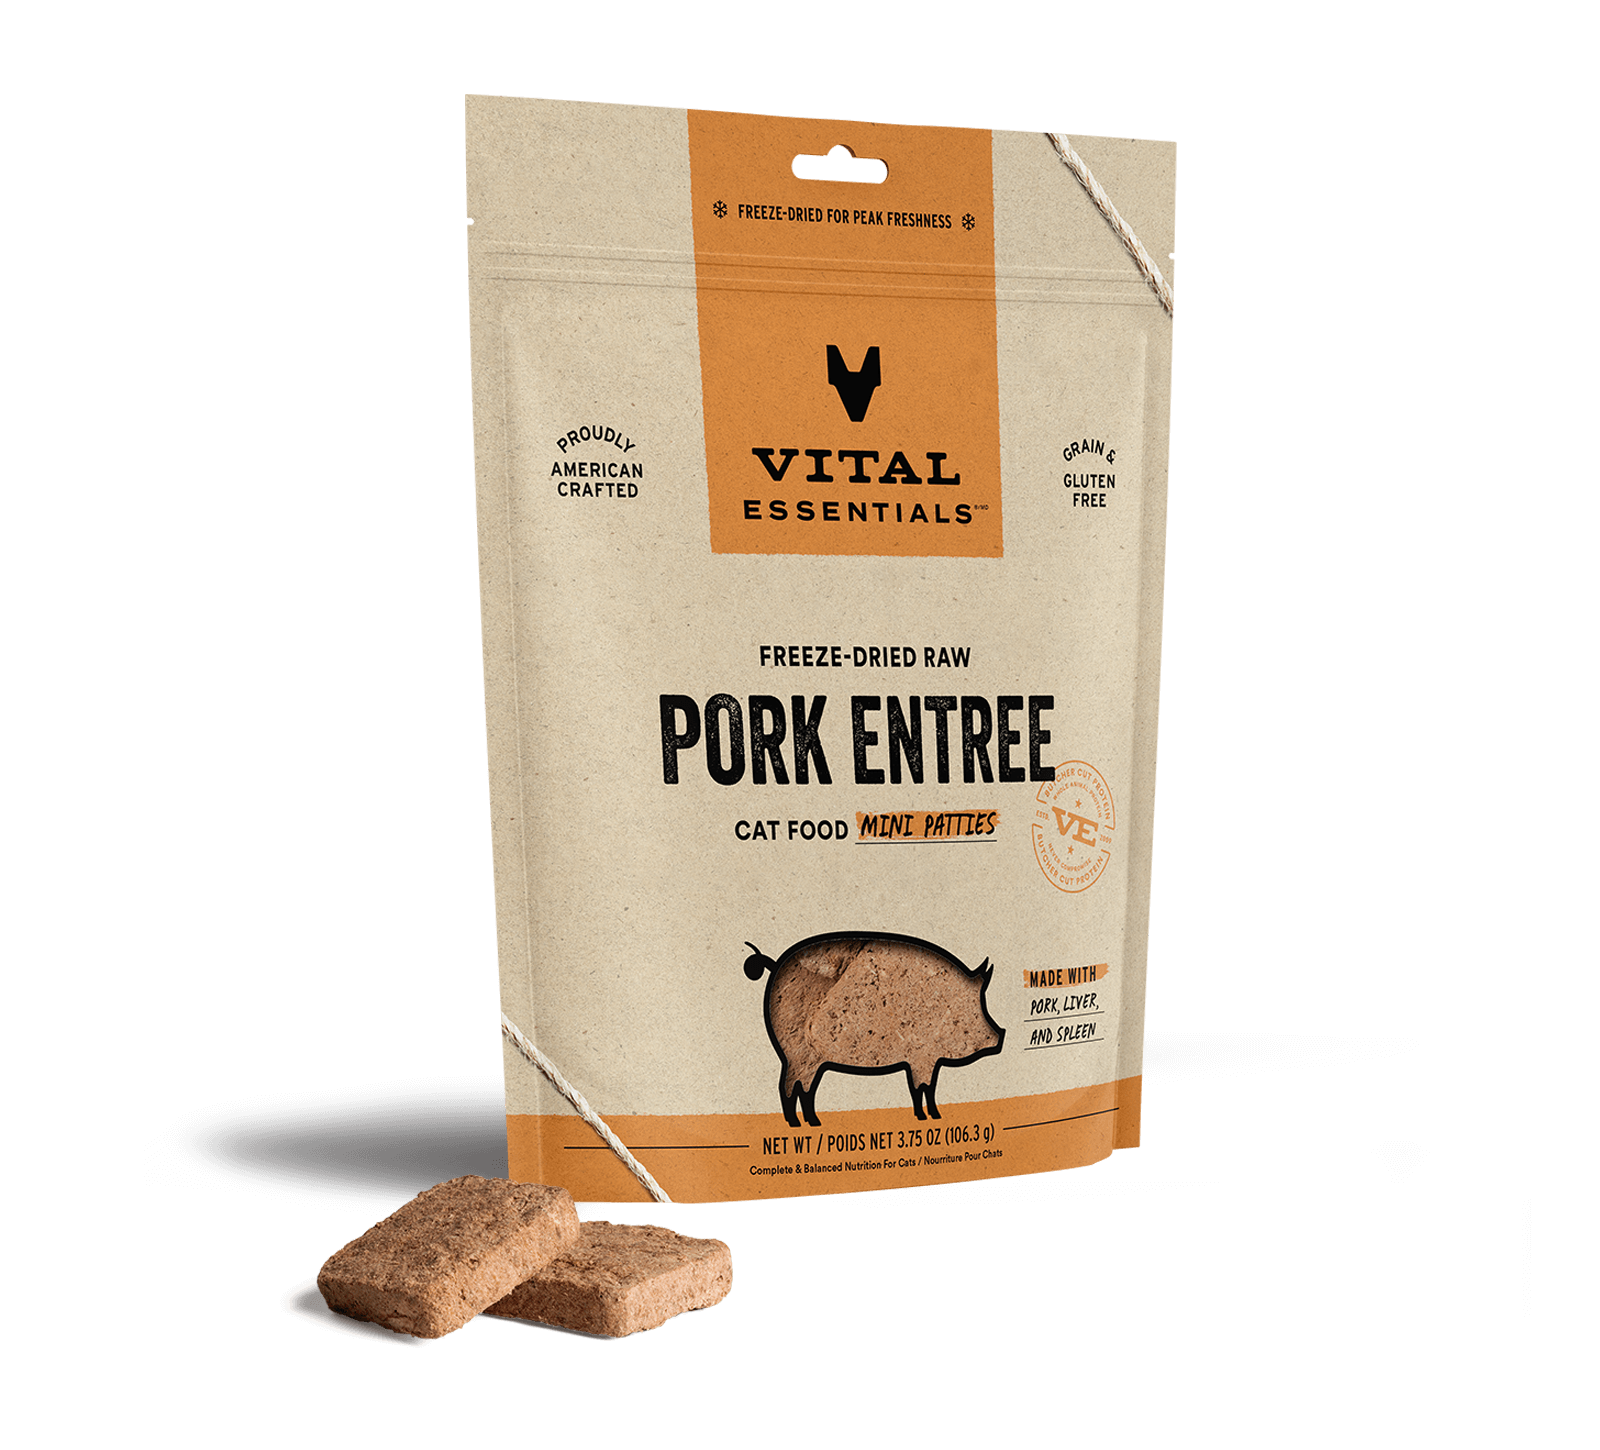 Vital Essentials Freeze-Dried Raw Pork Entree Cat Food Mini Patties, 3.75 oz - Food